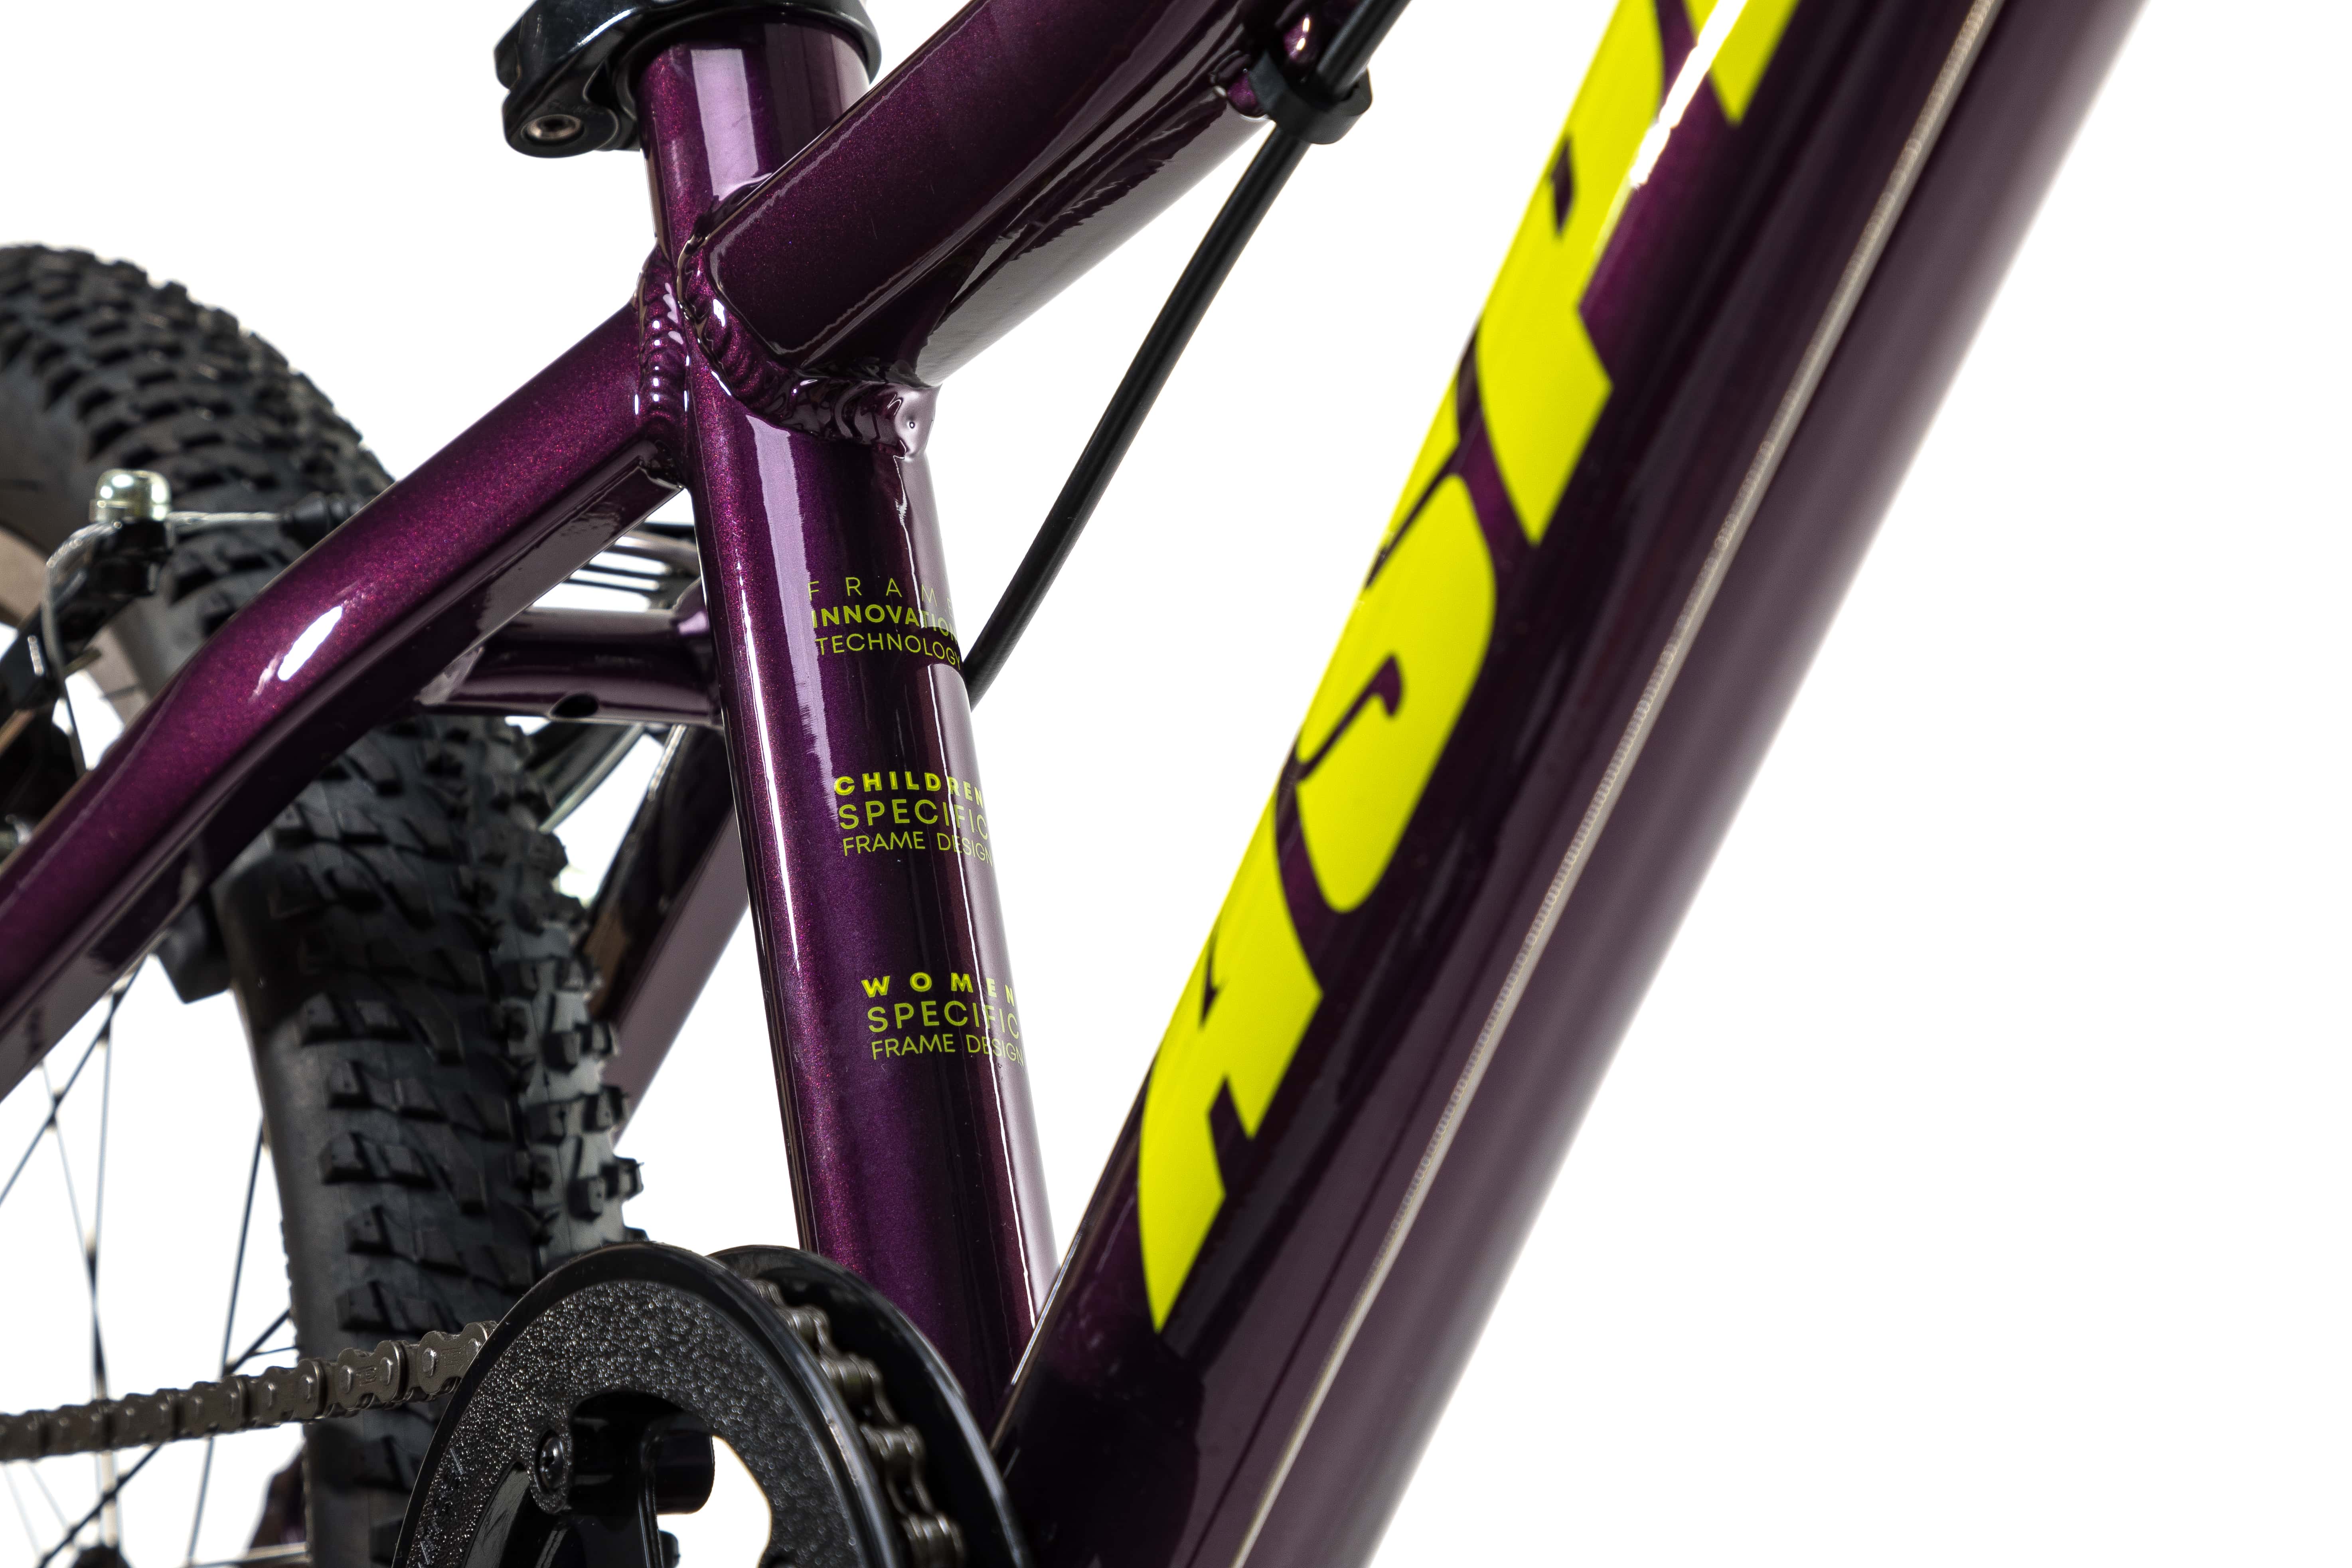 Велосипед Aspect GALAXY 20" Фиолетовый (2022)